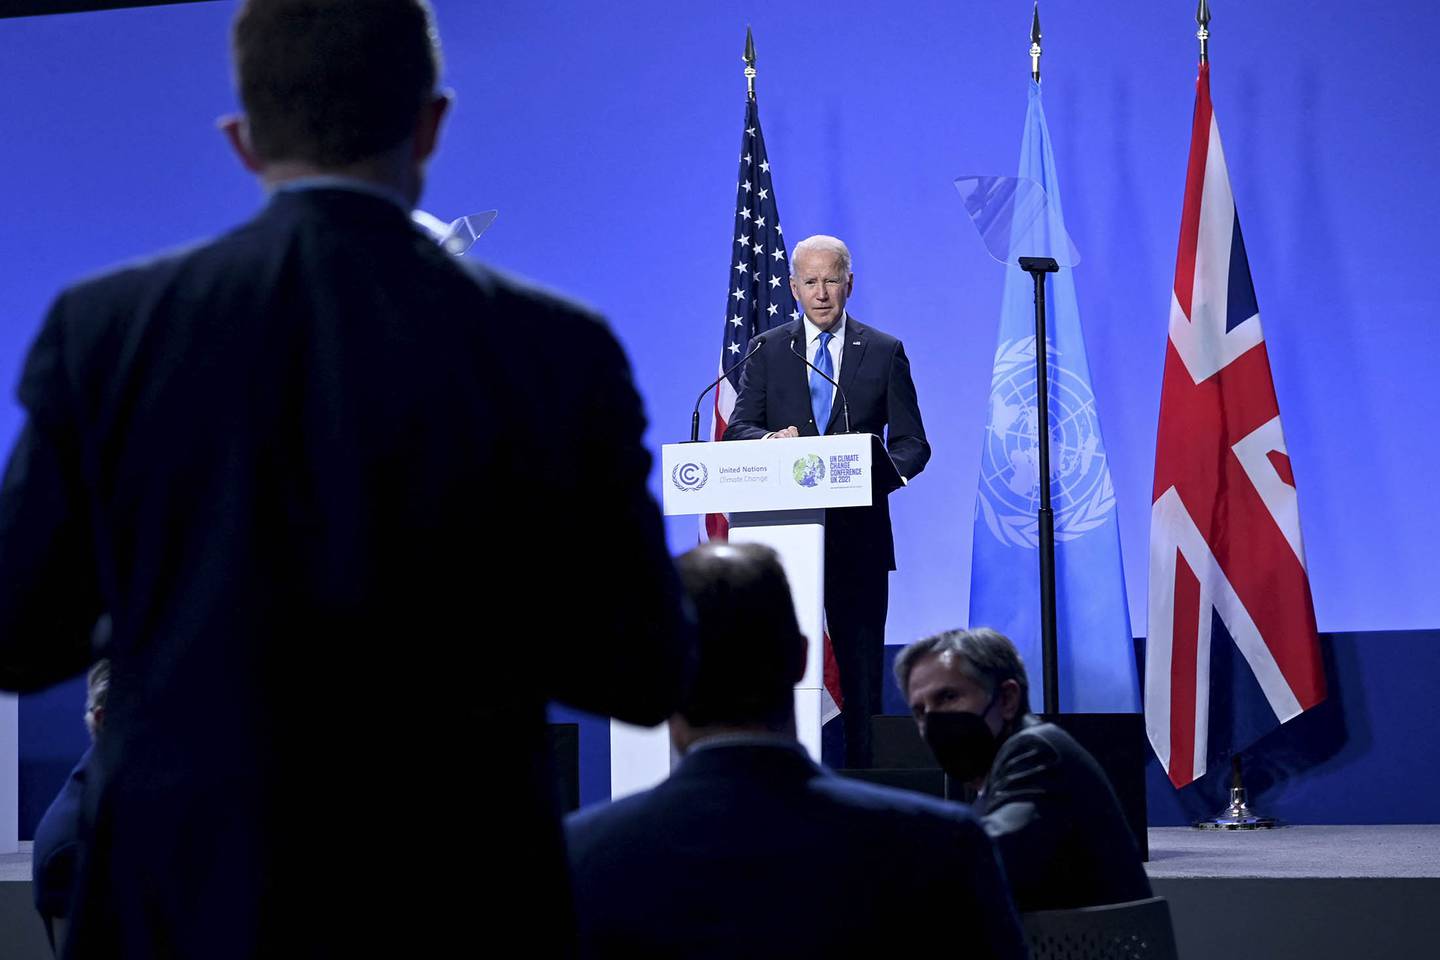 El presidente Joe Biden habla durante una conferencia de prensa en la cumbre climática COP-26 el 2 de noviembre. Fotógrafo: Brendan Smialowki / AFP a través de Getty Images